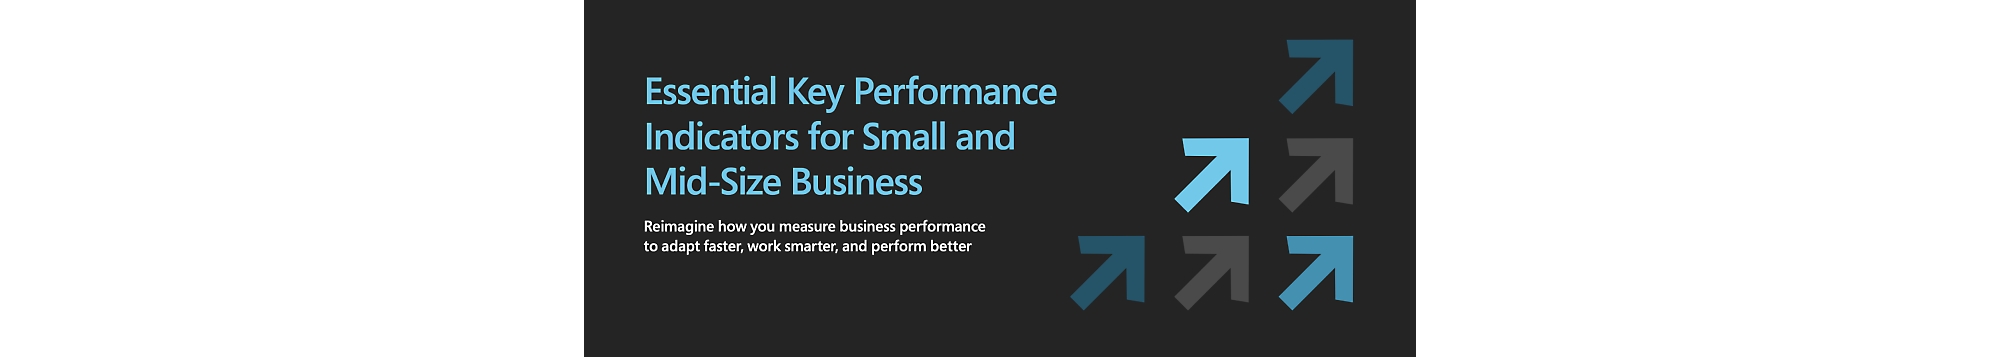 Indicateurs de performance clés essentiels pour les petites et moyennes entreprises.